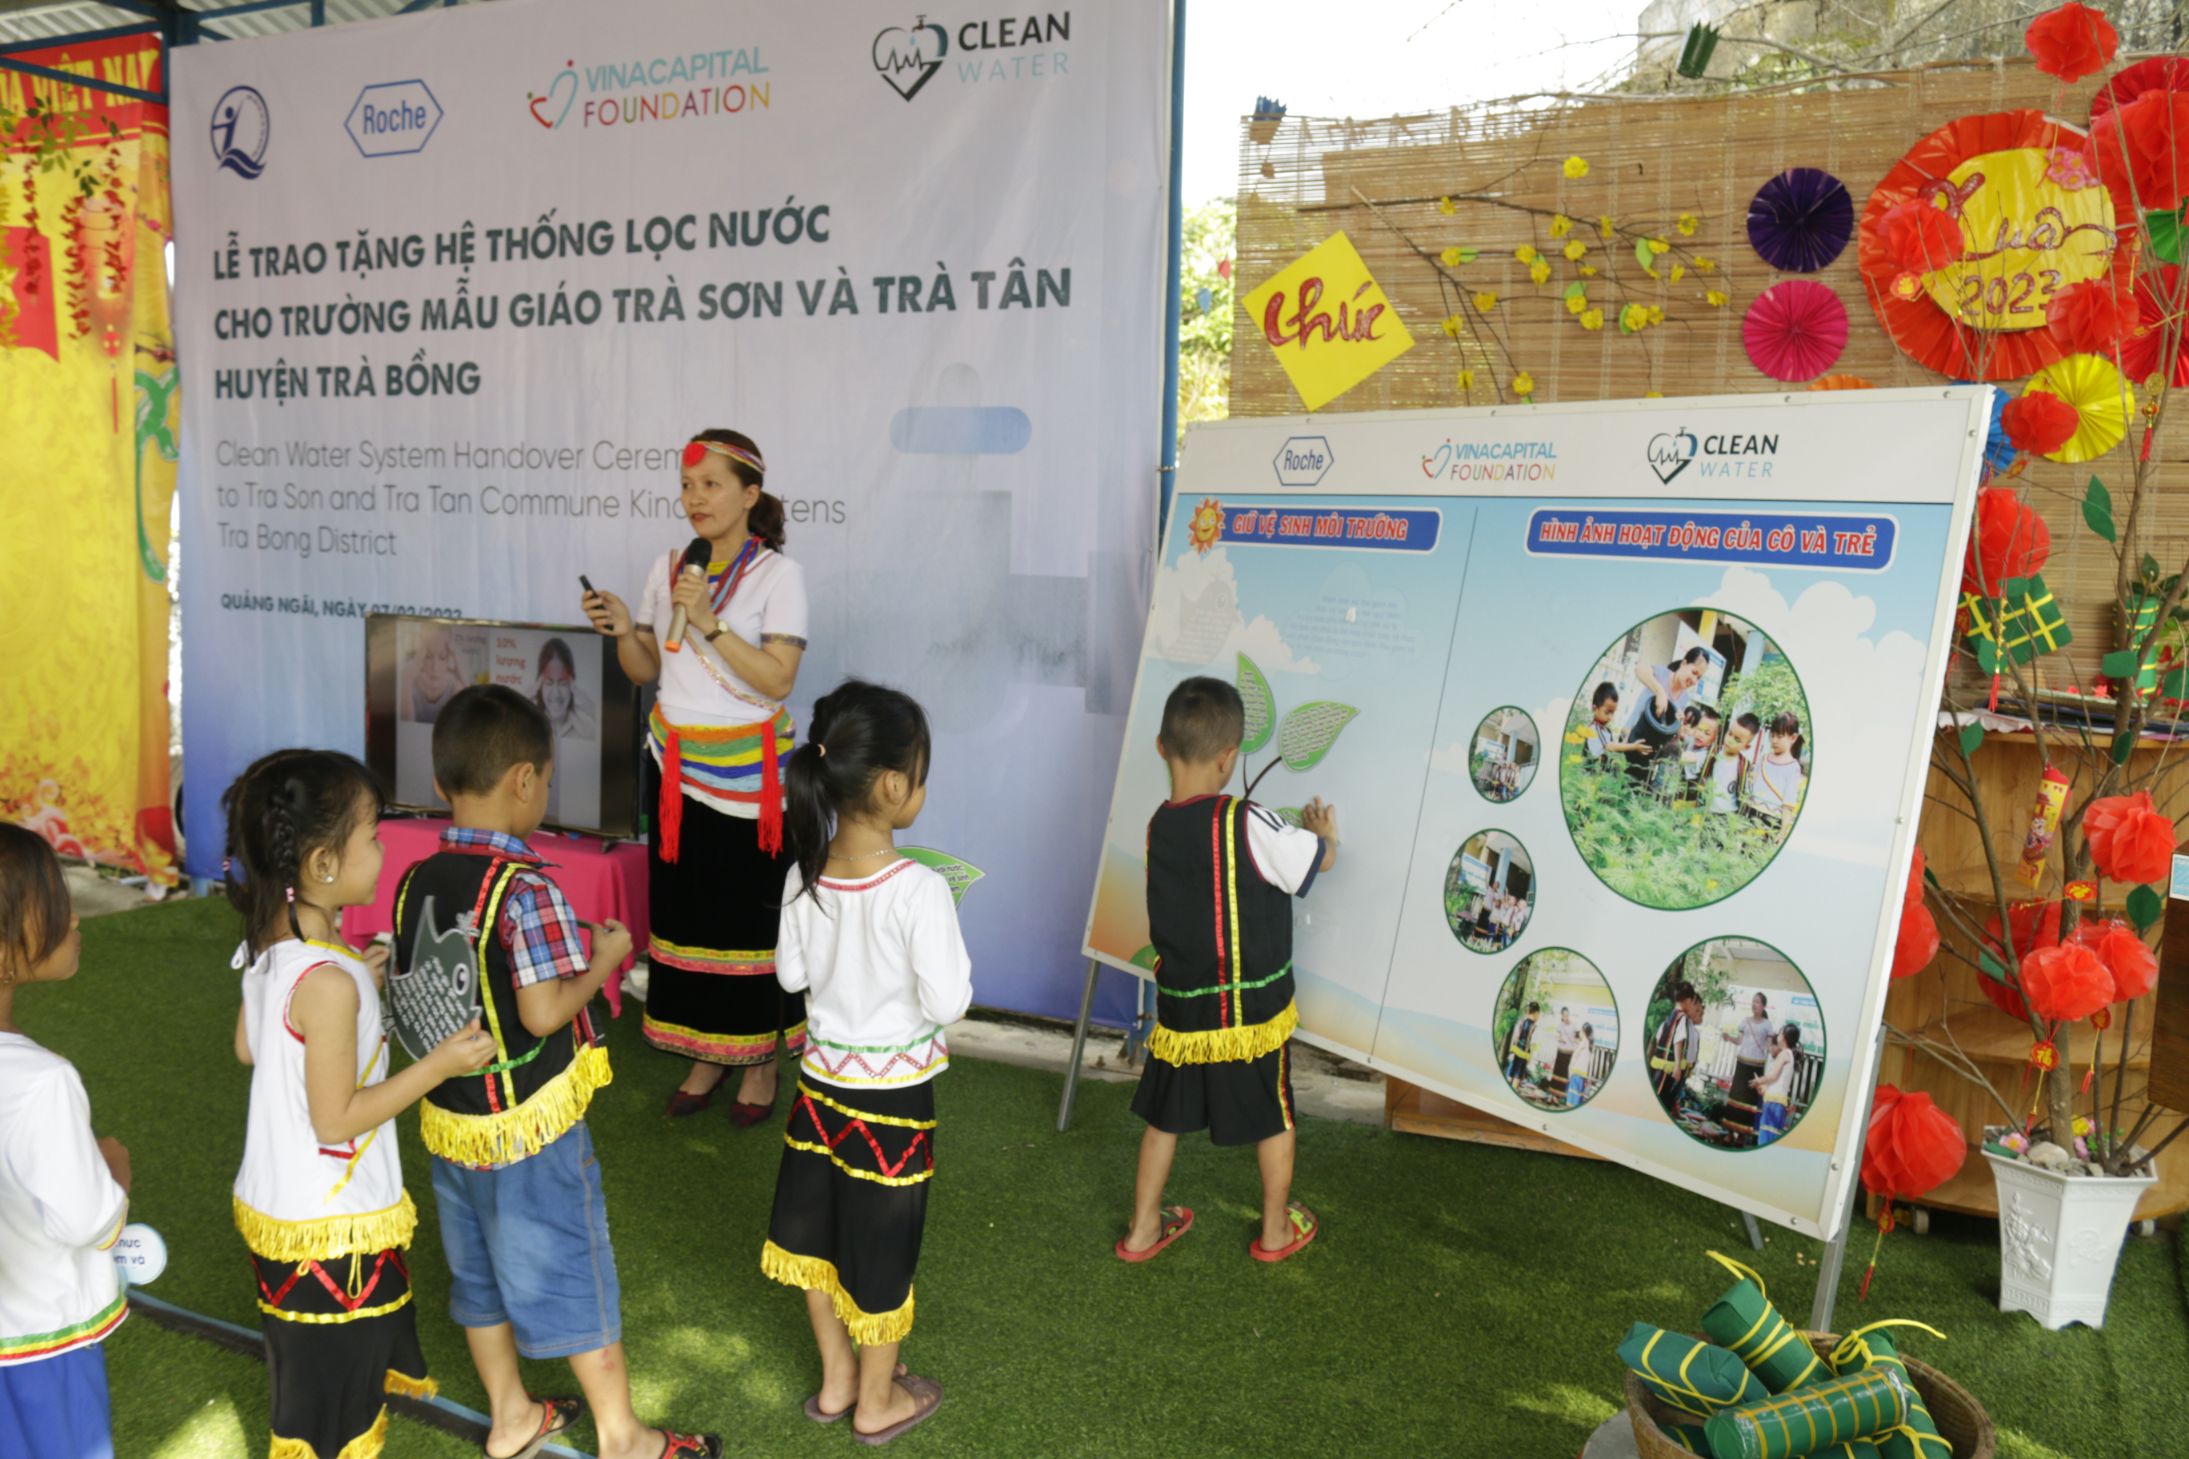 Tập huấn kiến thức về nước sạch và giữ gìn vệ sinh môi trường cho các em học sinh Roche Việt Nam trao tặng 2 hệ thống lọc nước sạch hỗ trợ trẻ em tại Quảng Ngãi